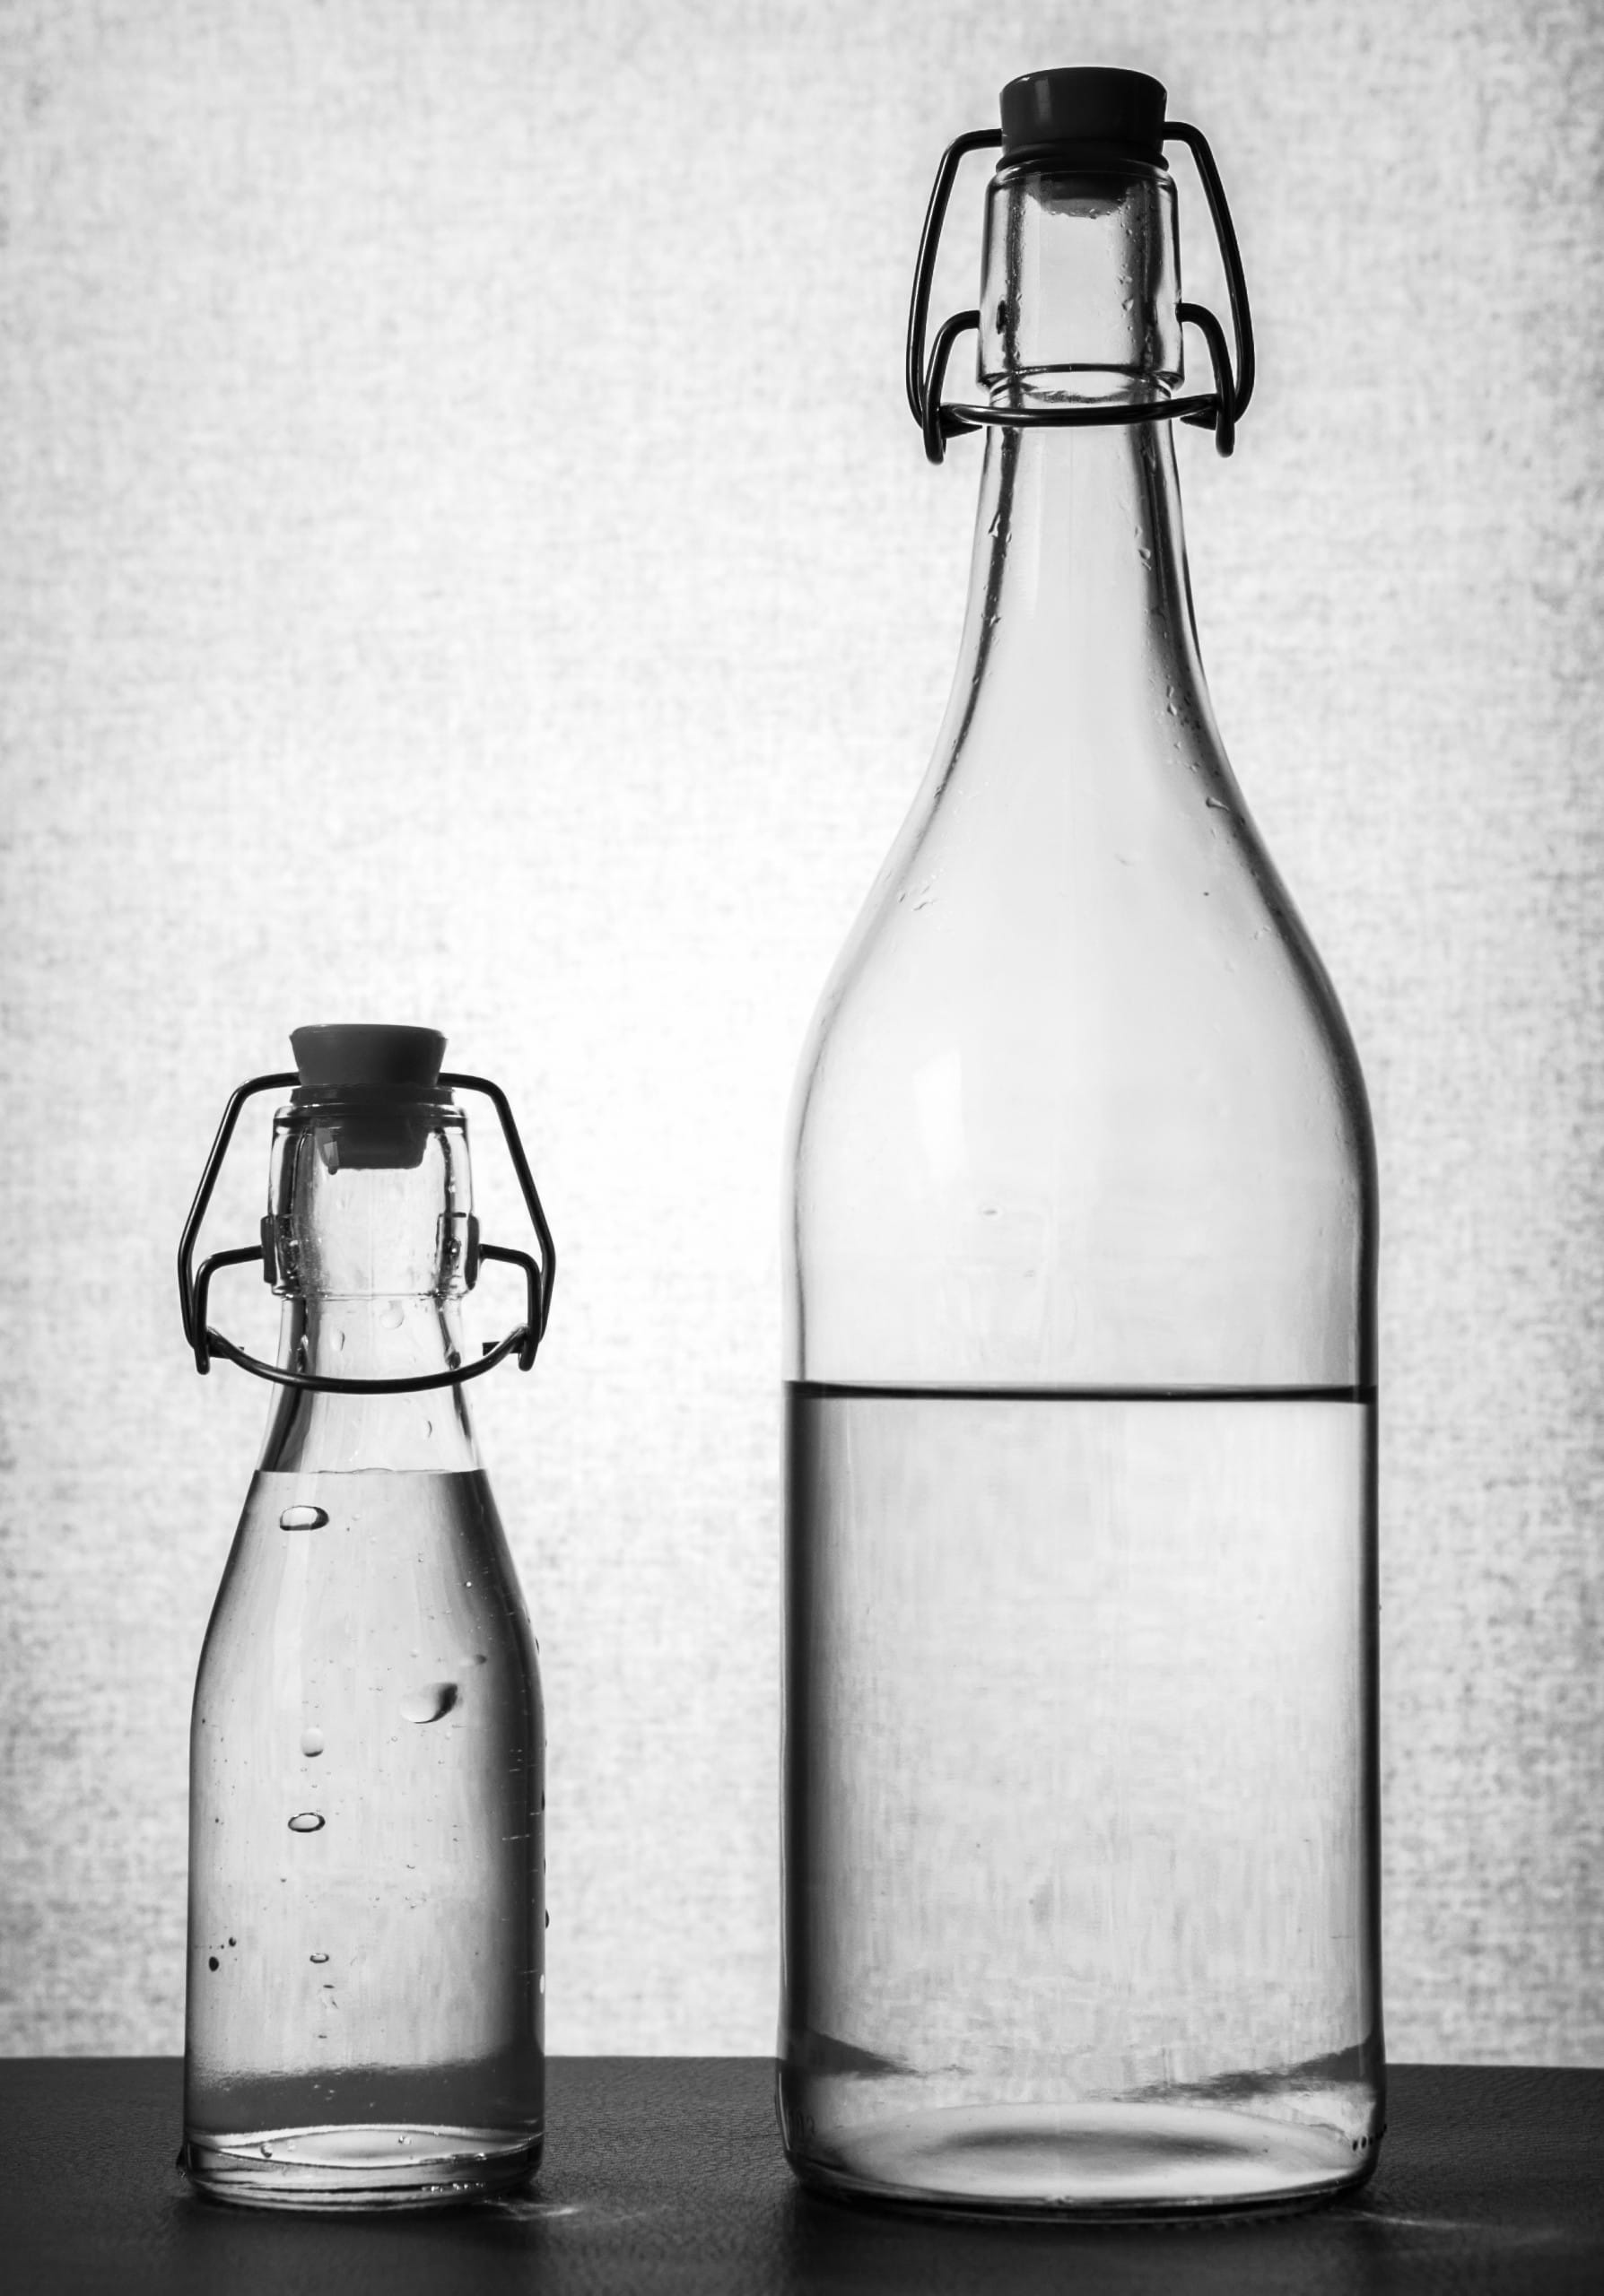 water, glass bottles, bottles